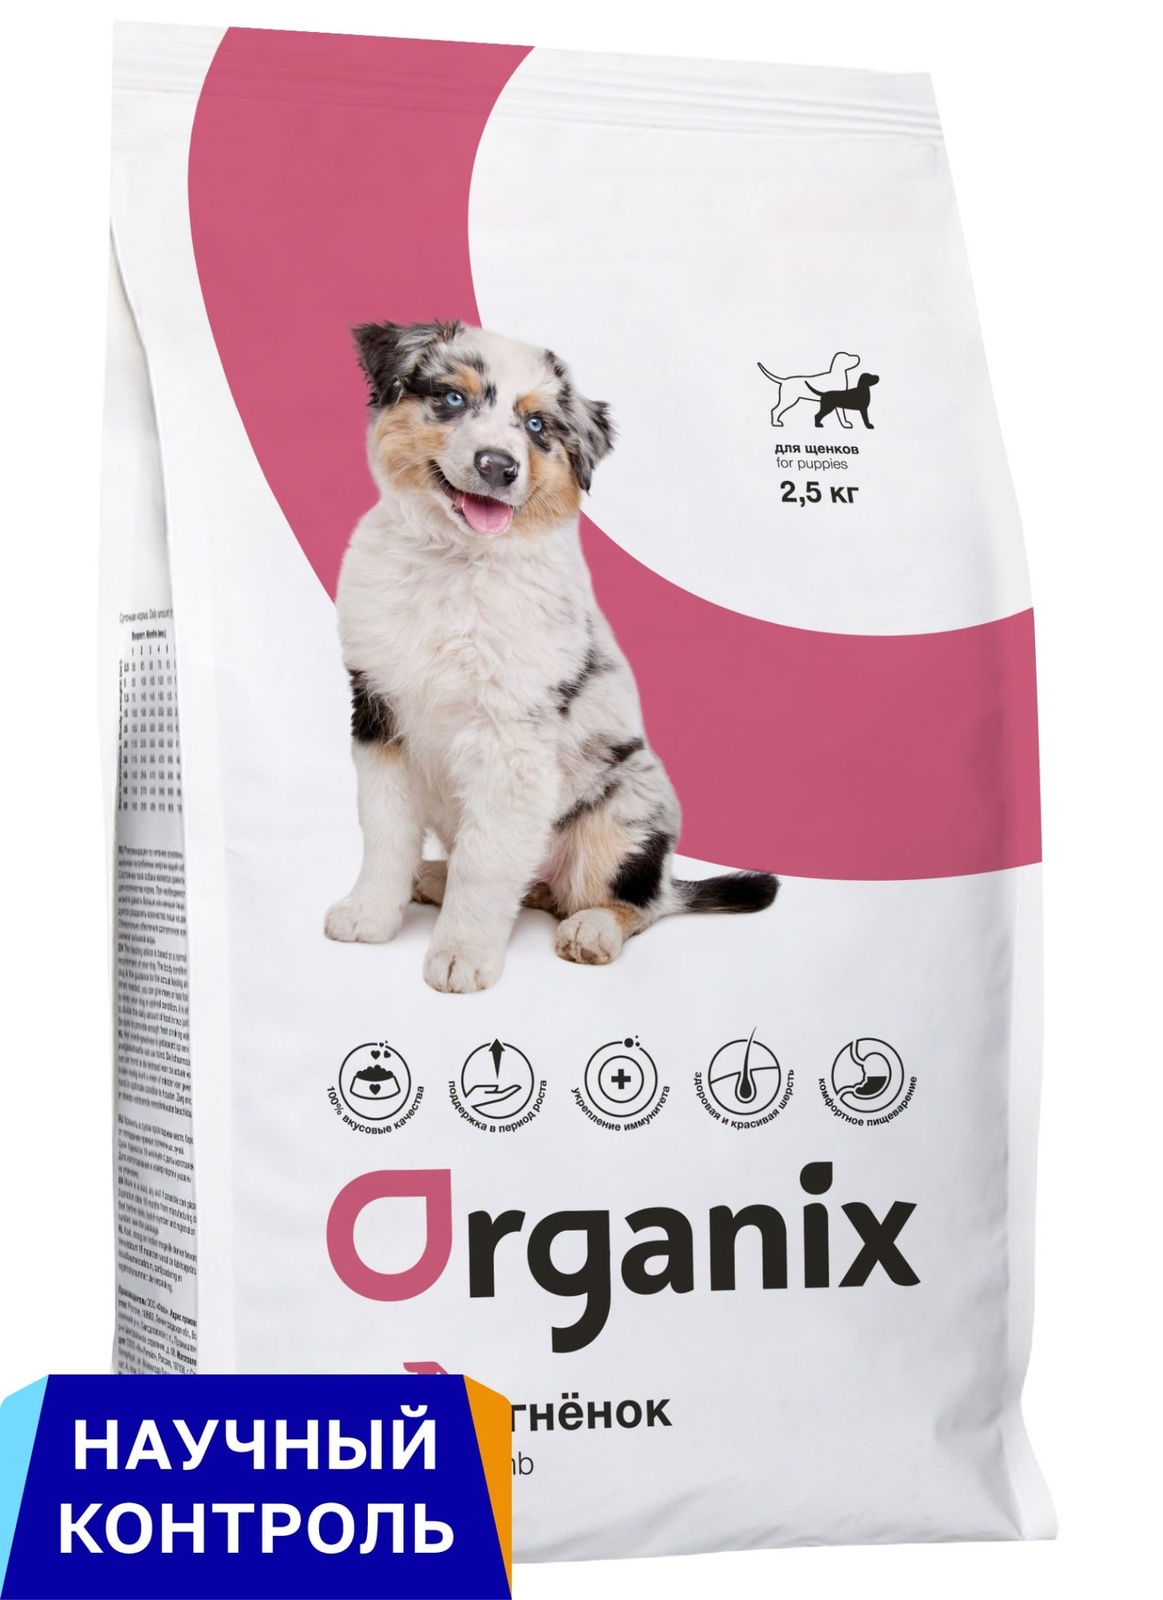 Organix  сухой корм для щенков, с ягненком (2,5 кг) Organix  сухой корм для щенков, с ягненком (2,5 кг) - фото 1